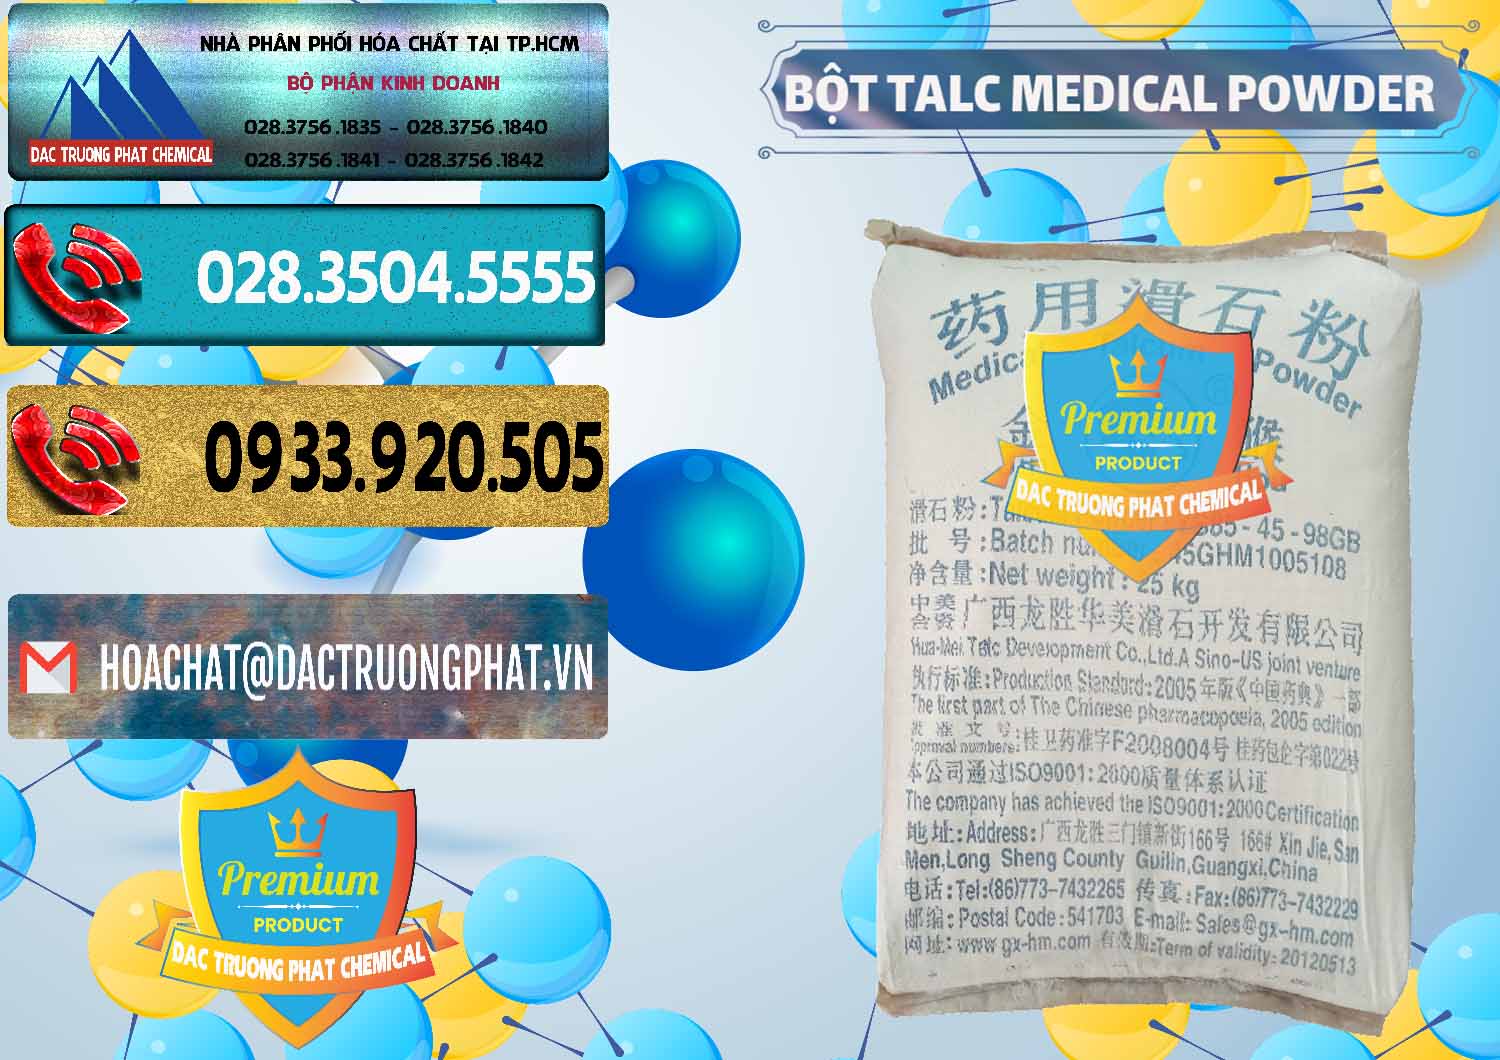 Cty kinh doanh và bán Bột Talc Medical Powder Trung Quốc China - 0036 - Phân phối ( cung cấp ) hóa chất tại TP.HCM - hoachatdetnhuom.com